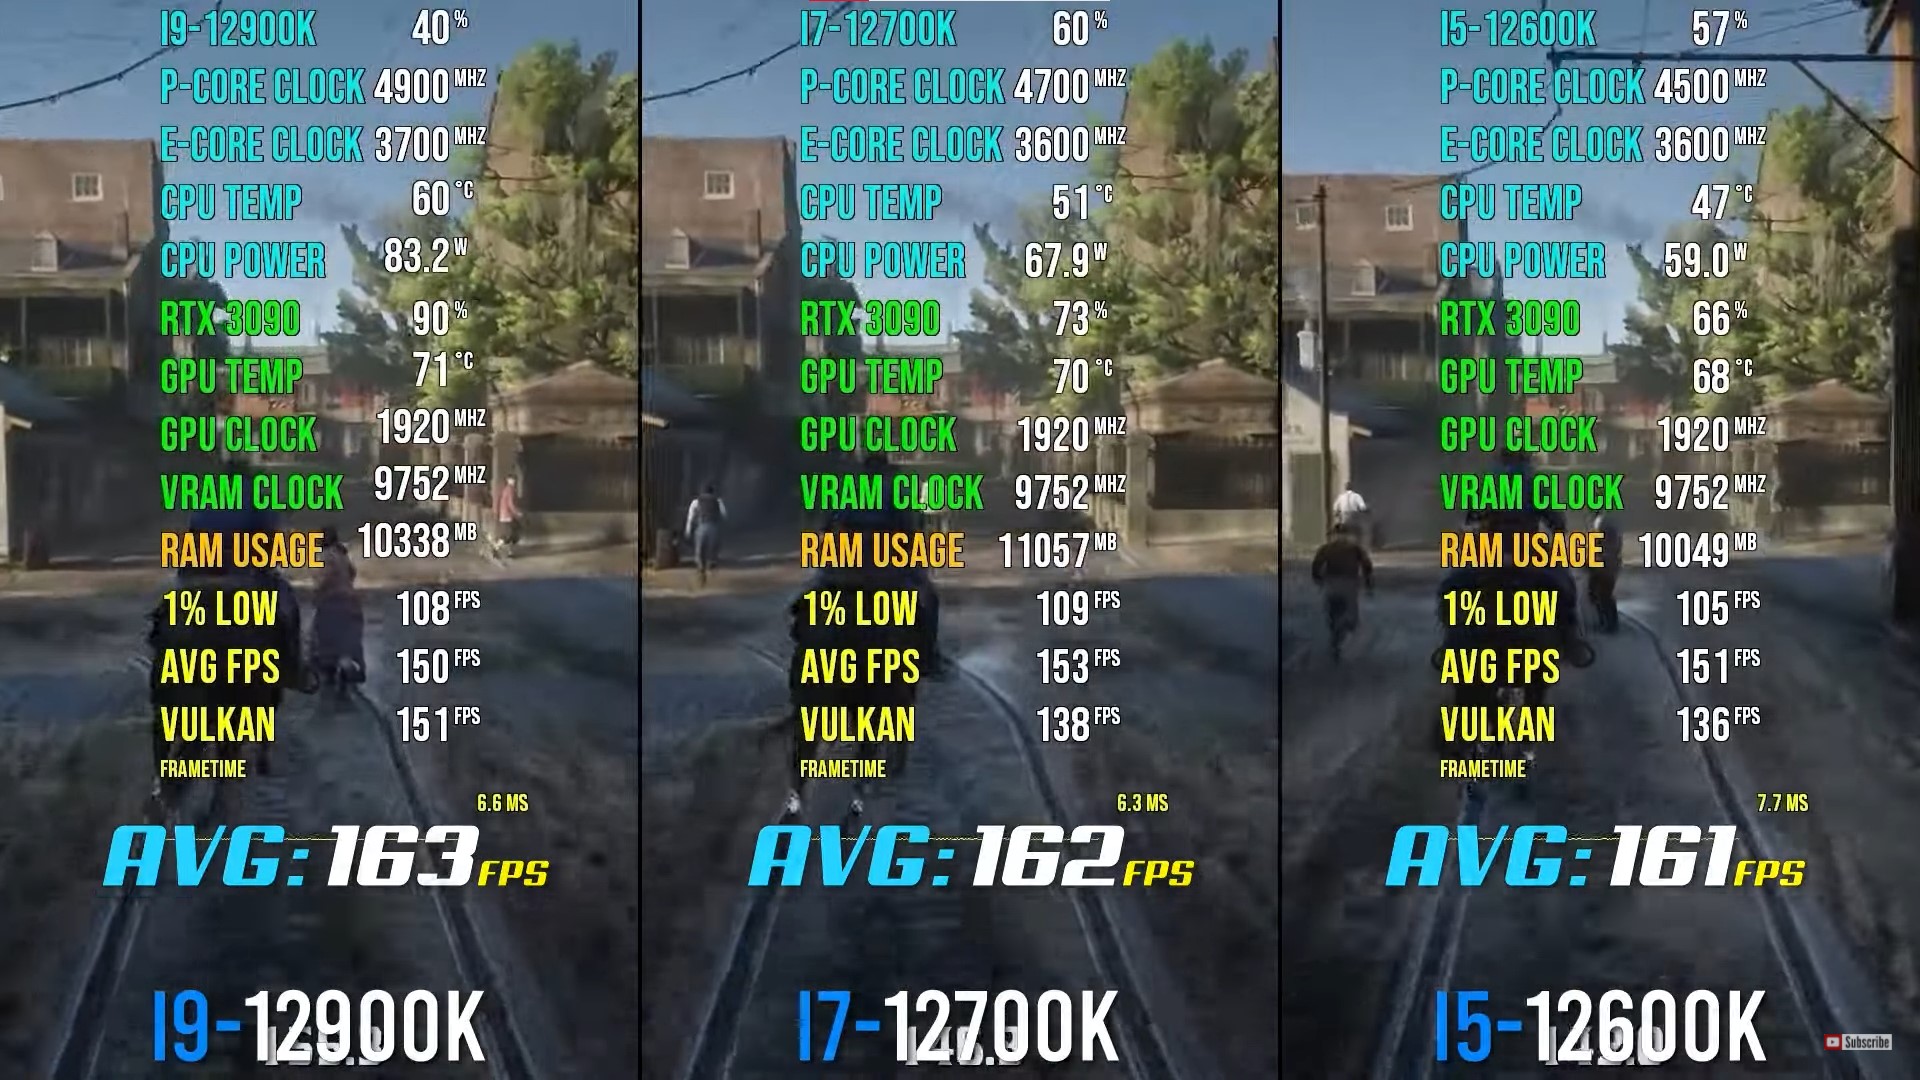 i9-12900k vs i7-12700k vs i5-12600k [Gaming Benchmarks]